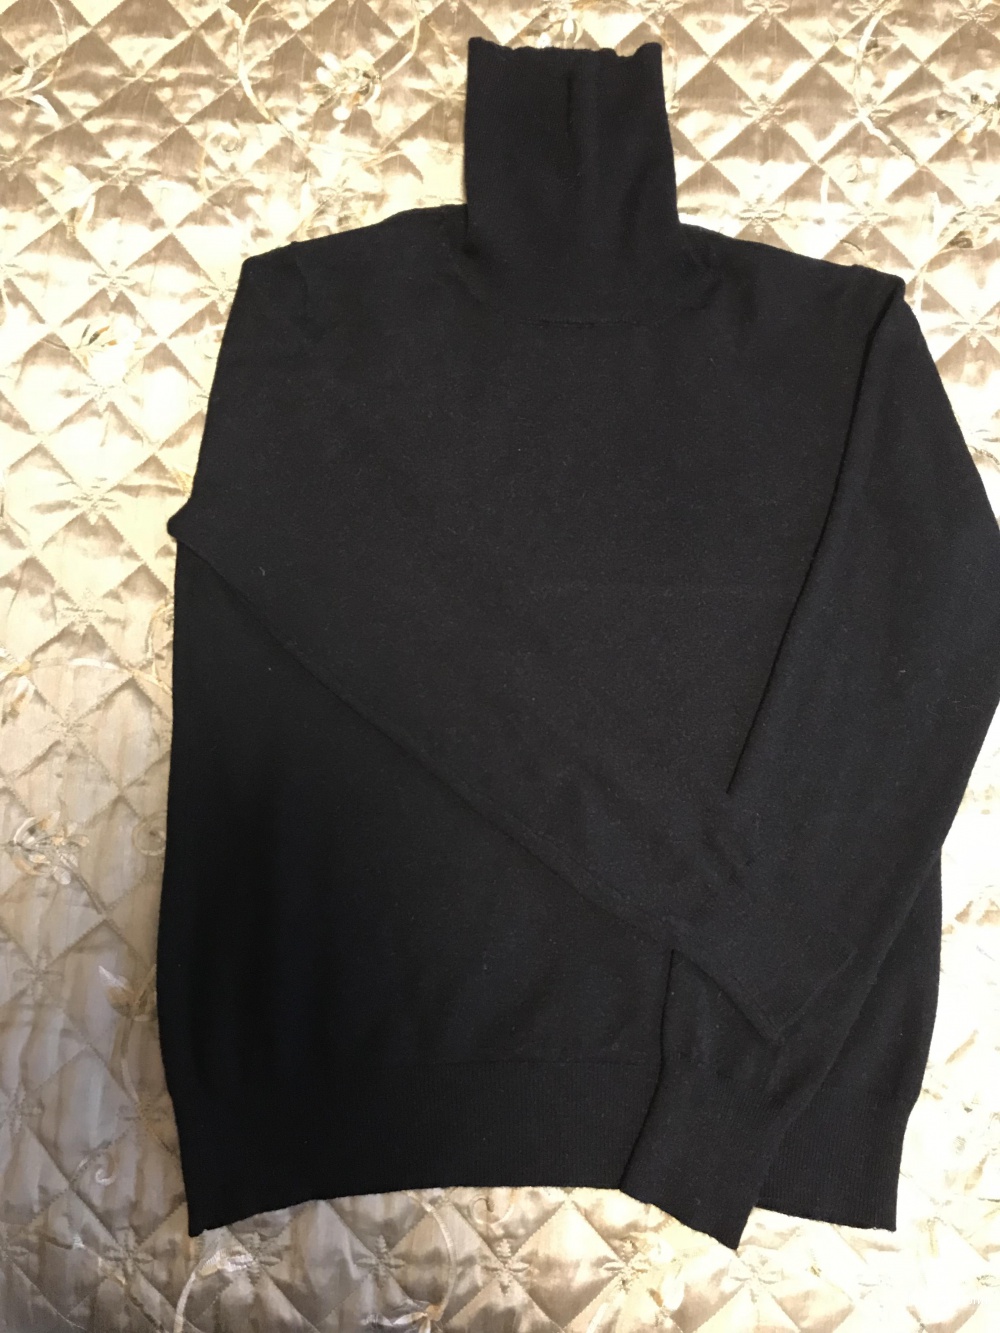 Водолазка Massimo Dutti, размер S, цвет чёрный